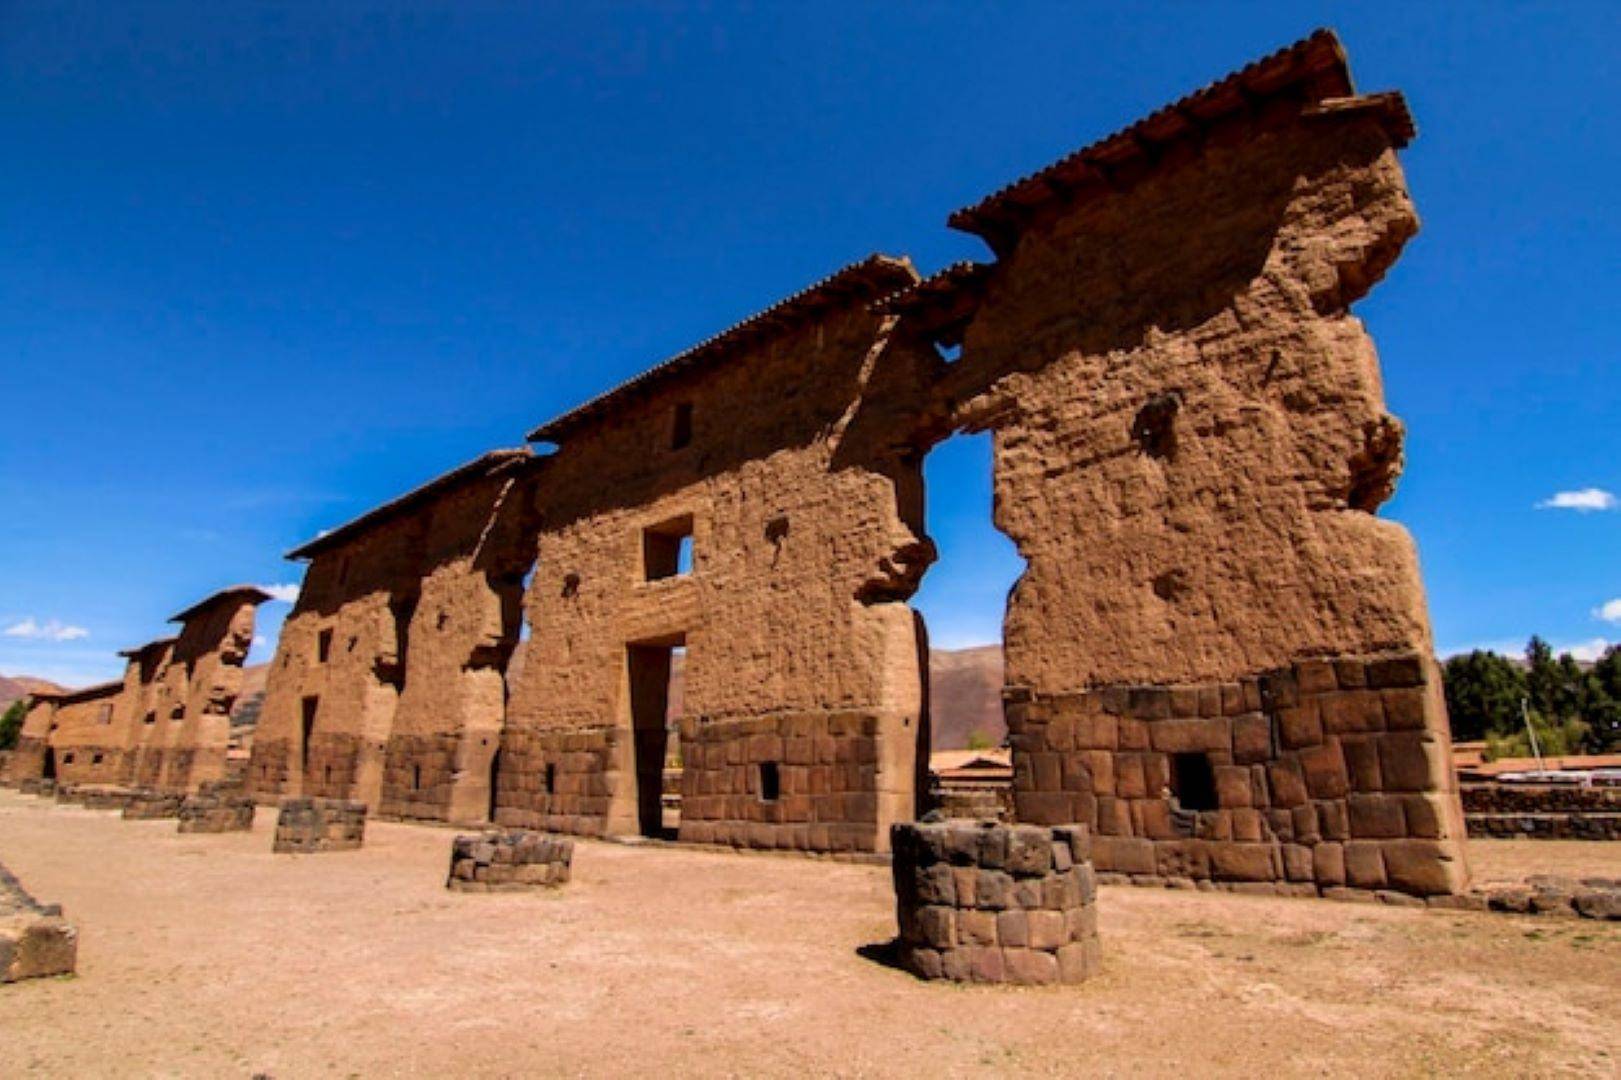 Cusco – Pikillaqta – Tipon – Andahuayllas - Raqchi